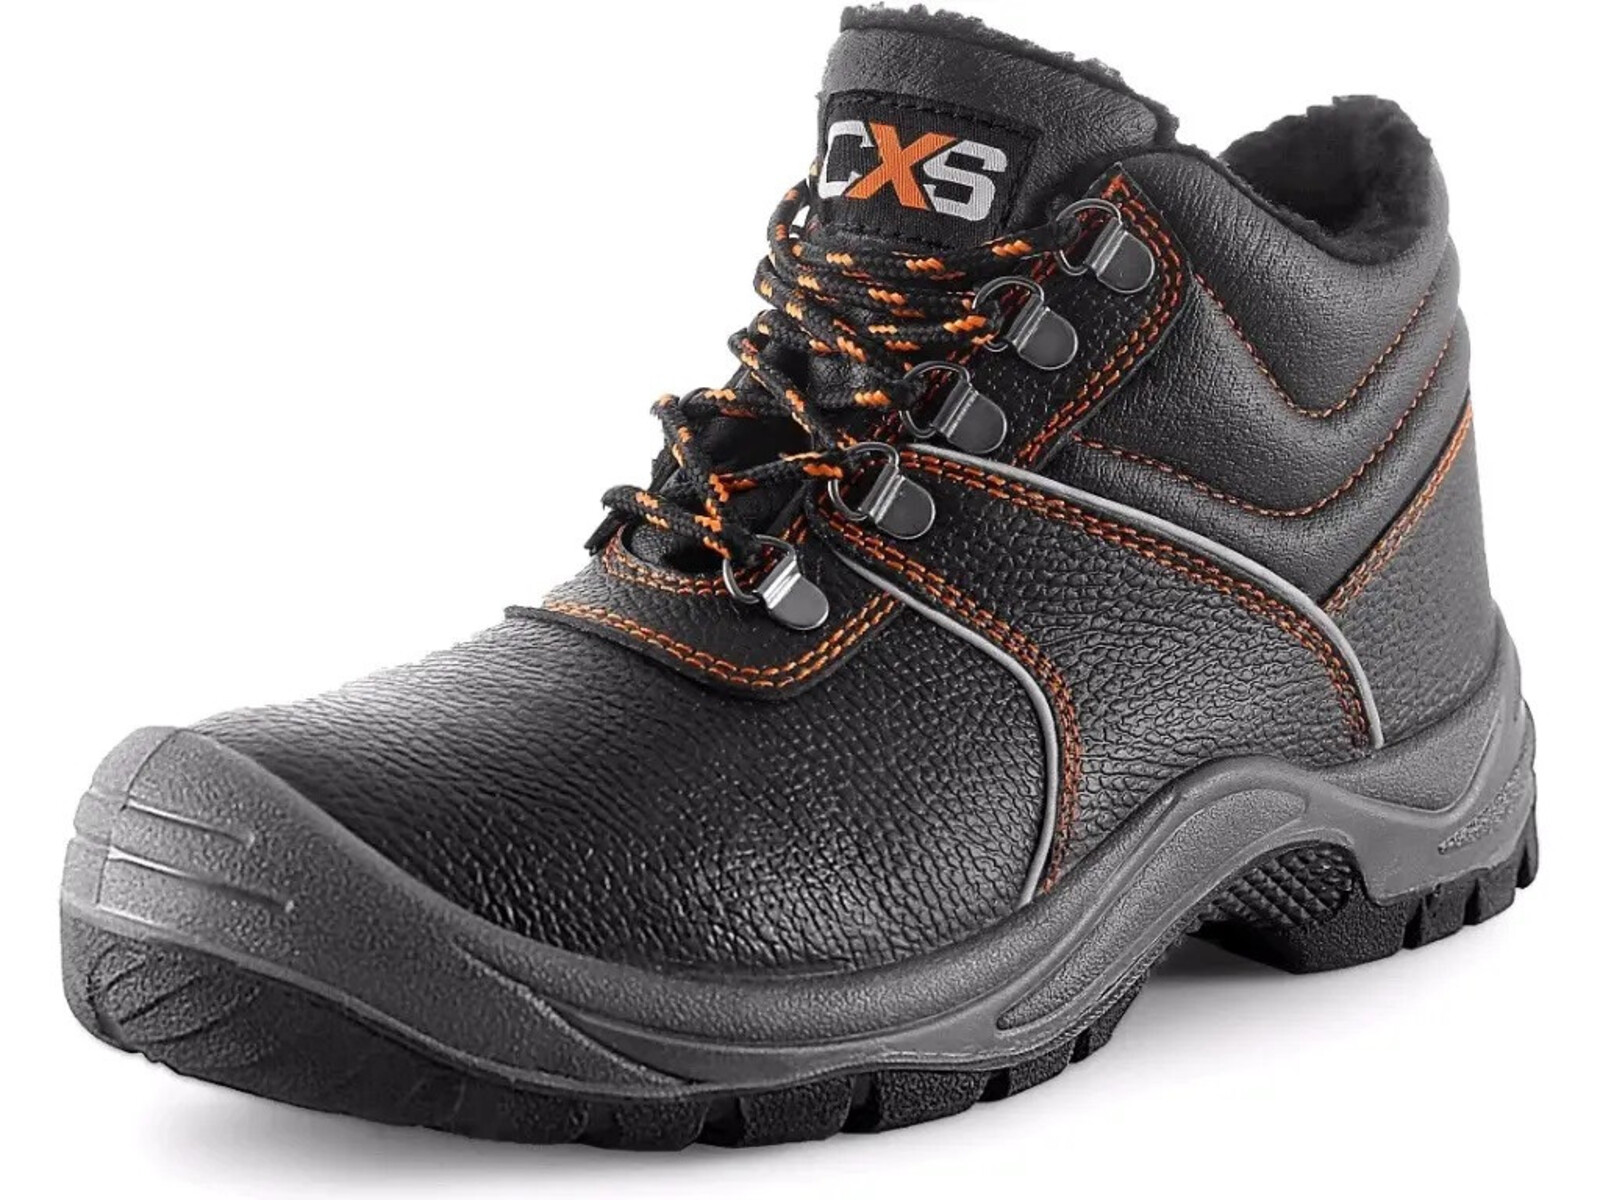 Zimná pracovná členková obuv CXS Stone Apatit Winter O2 FO SRC - veľkosť: 45, farba: čierna/oranžová